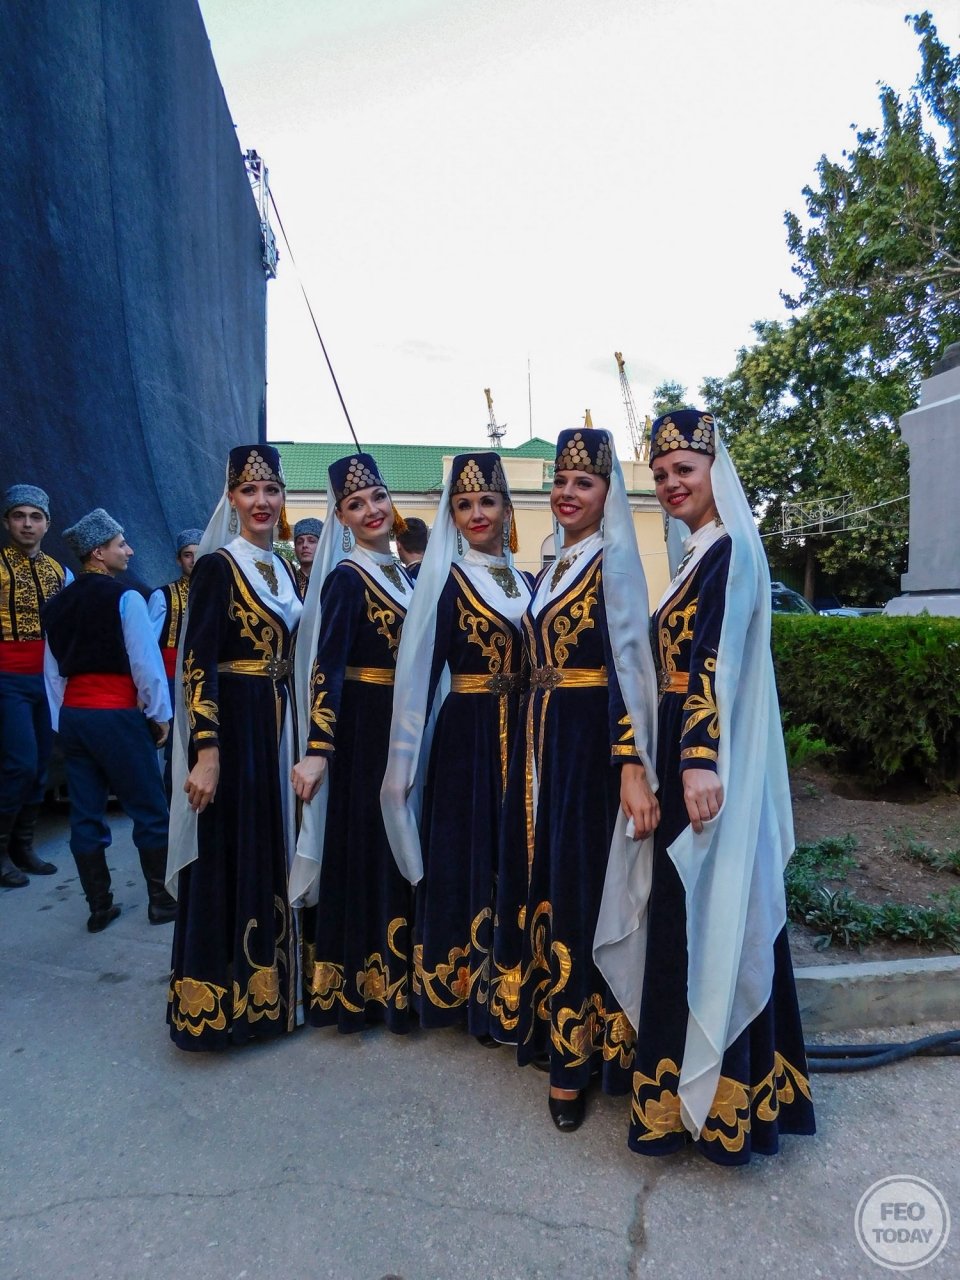 Фото концерта на День города 2017 и юбилей Айвазовского в Феодосии #2105